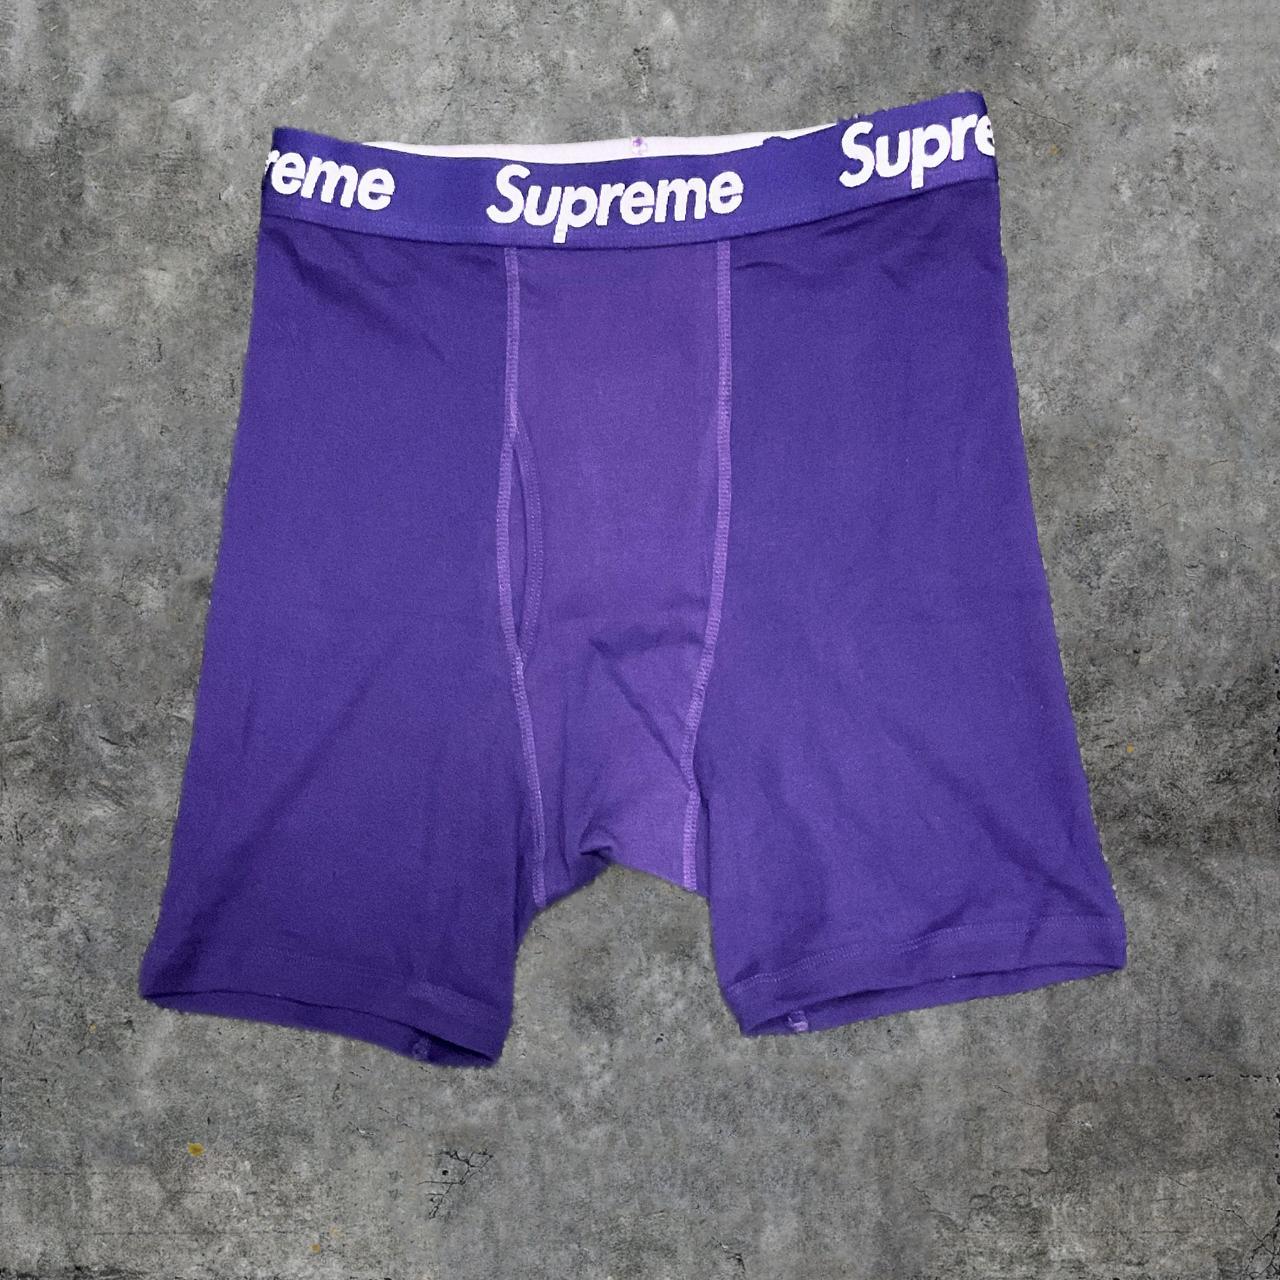 Supreme Men's Purple and White Boxers-and-briefs